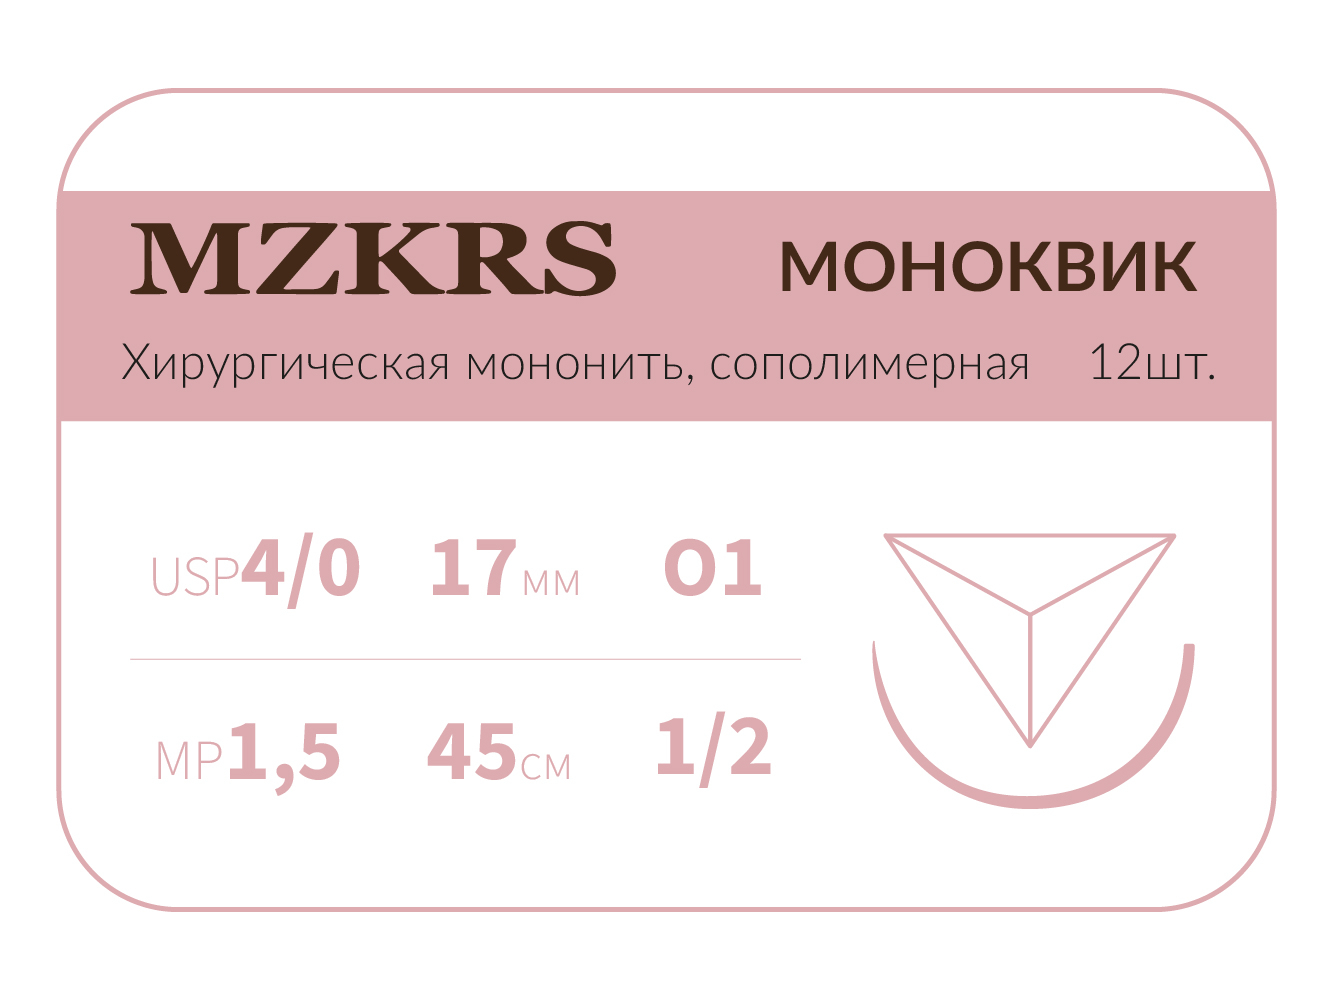 1712О1 Premium-4/0 (1,5)45 МОНК МОНОКВИК хирургическая мононить, сополимерная, обратно-режущая игла, MZKRS (Россия)